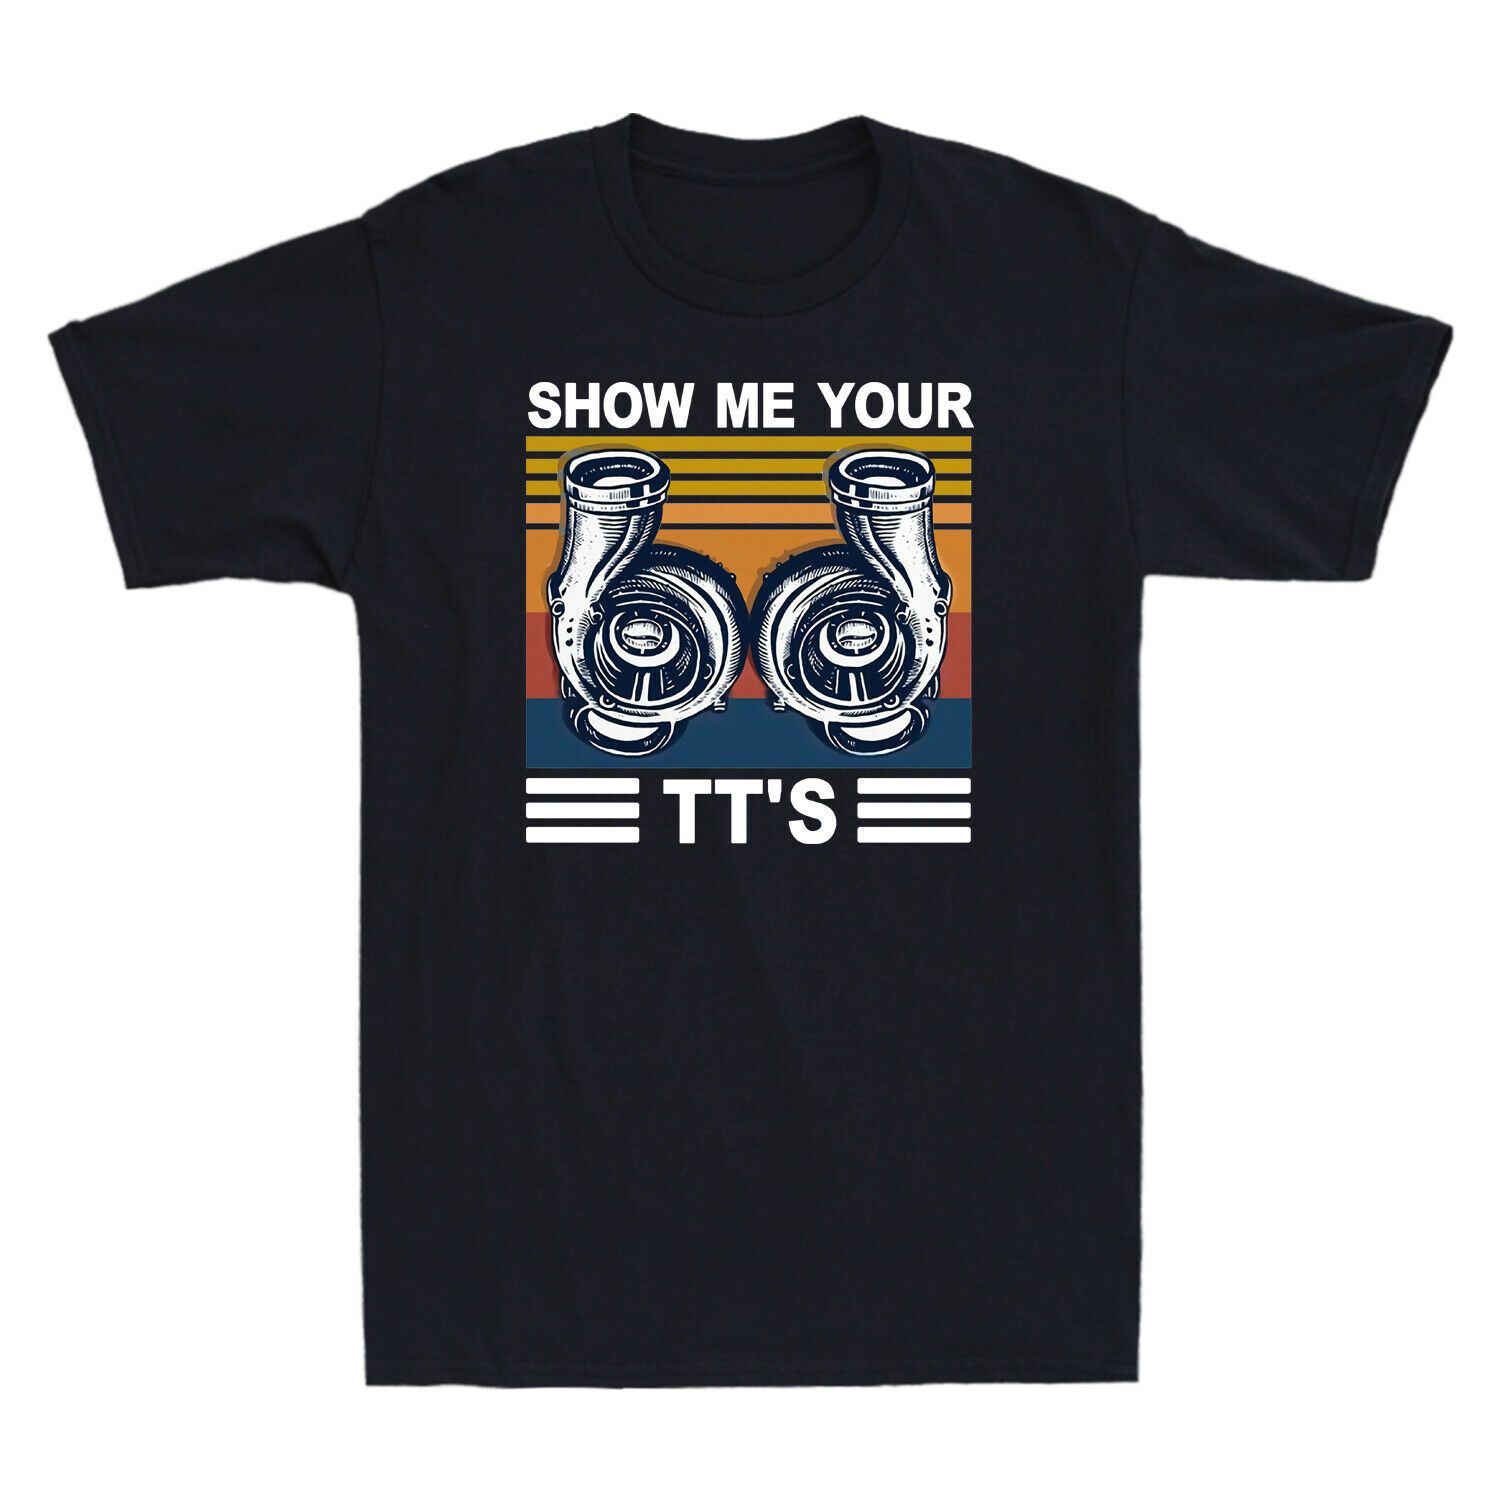 Show Me Your Tts Unisex T-Shirt